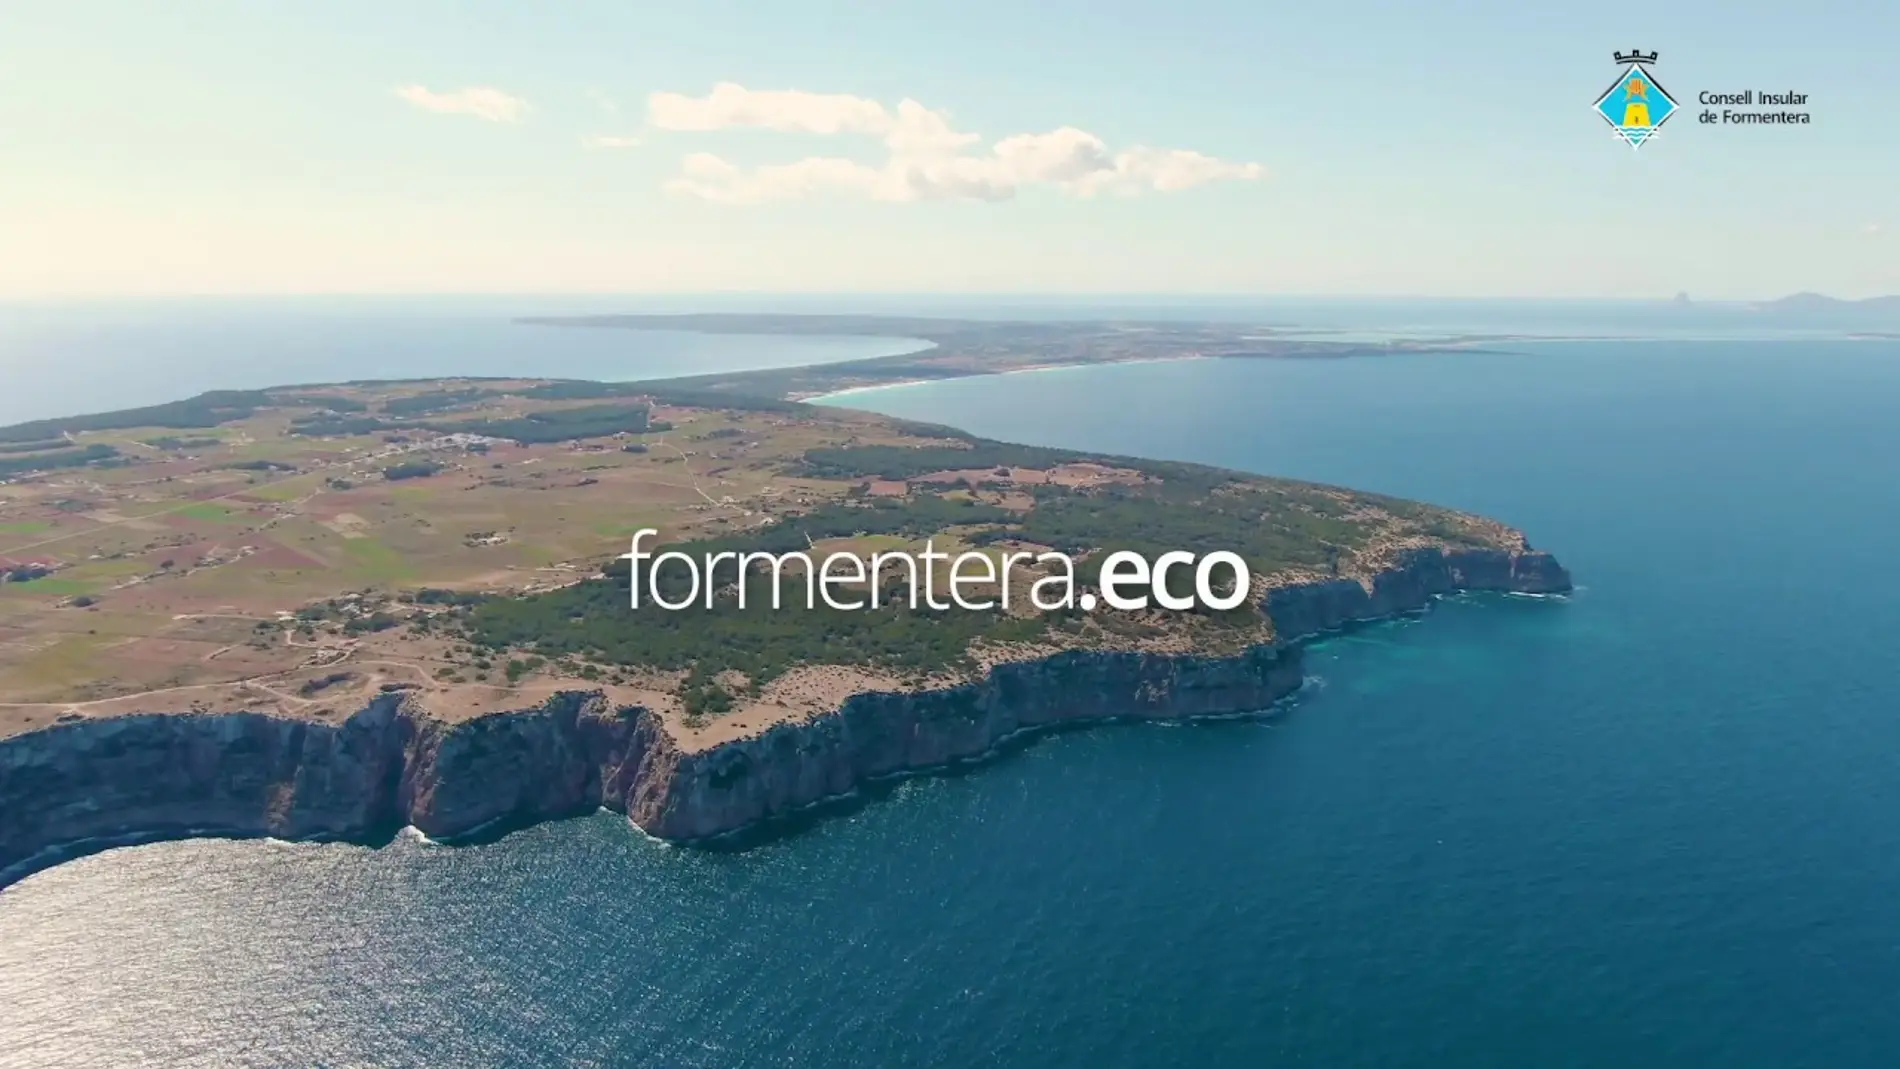 Formentera.eco ha rechazado un 10% de las solicitudes recibidas este verano para acceder en vehículo a la isla